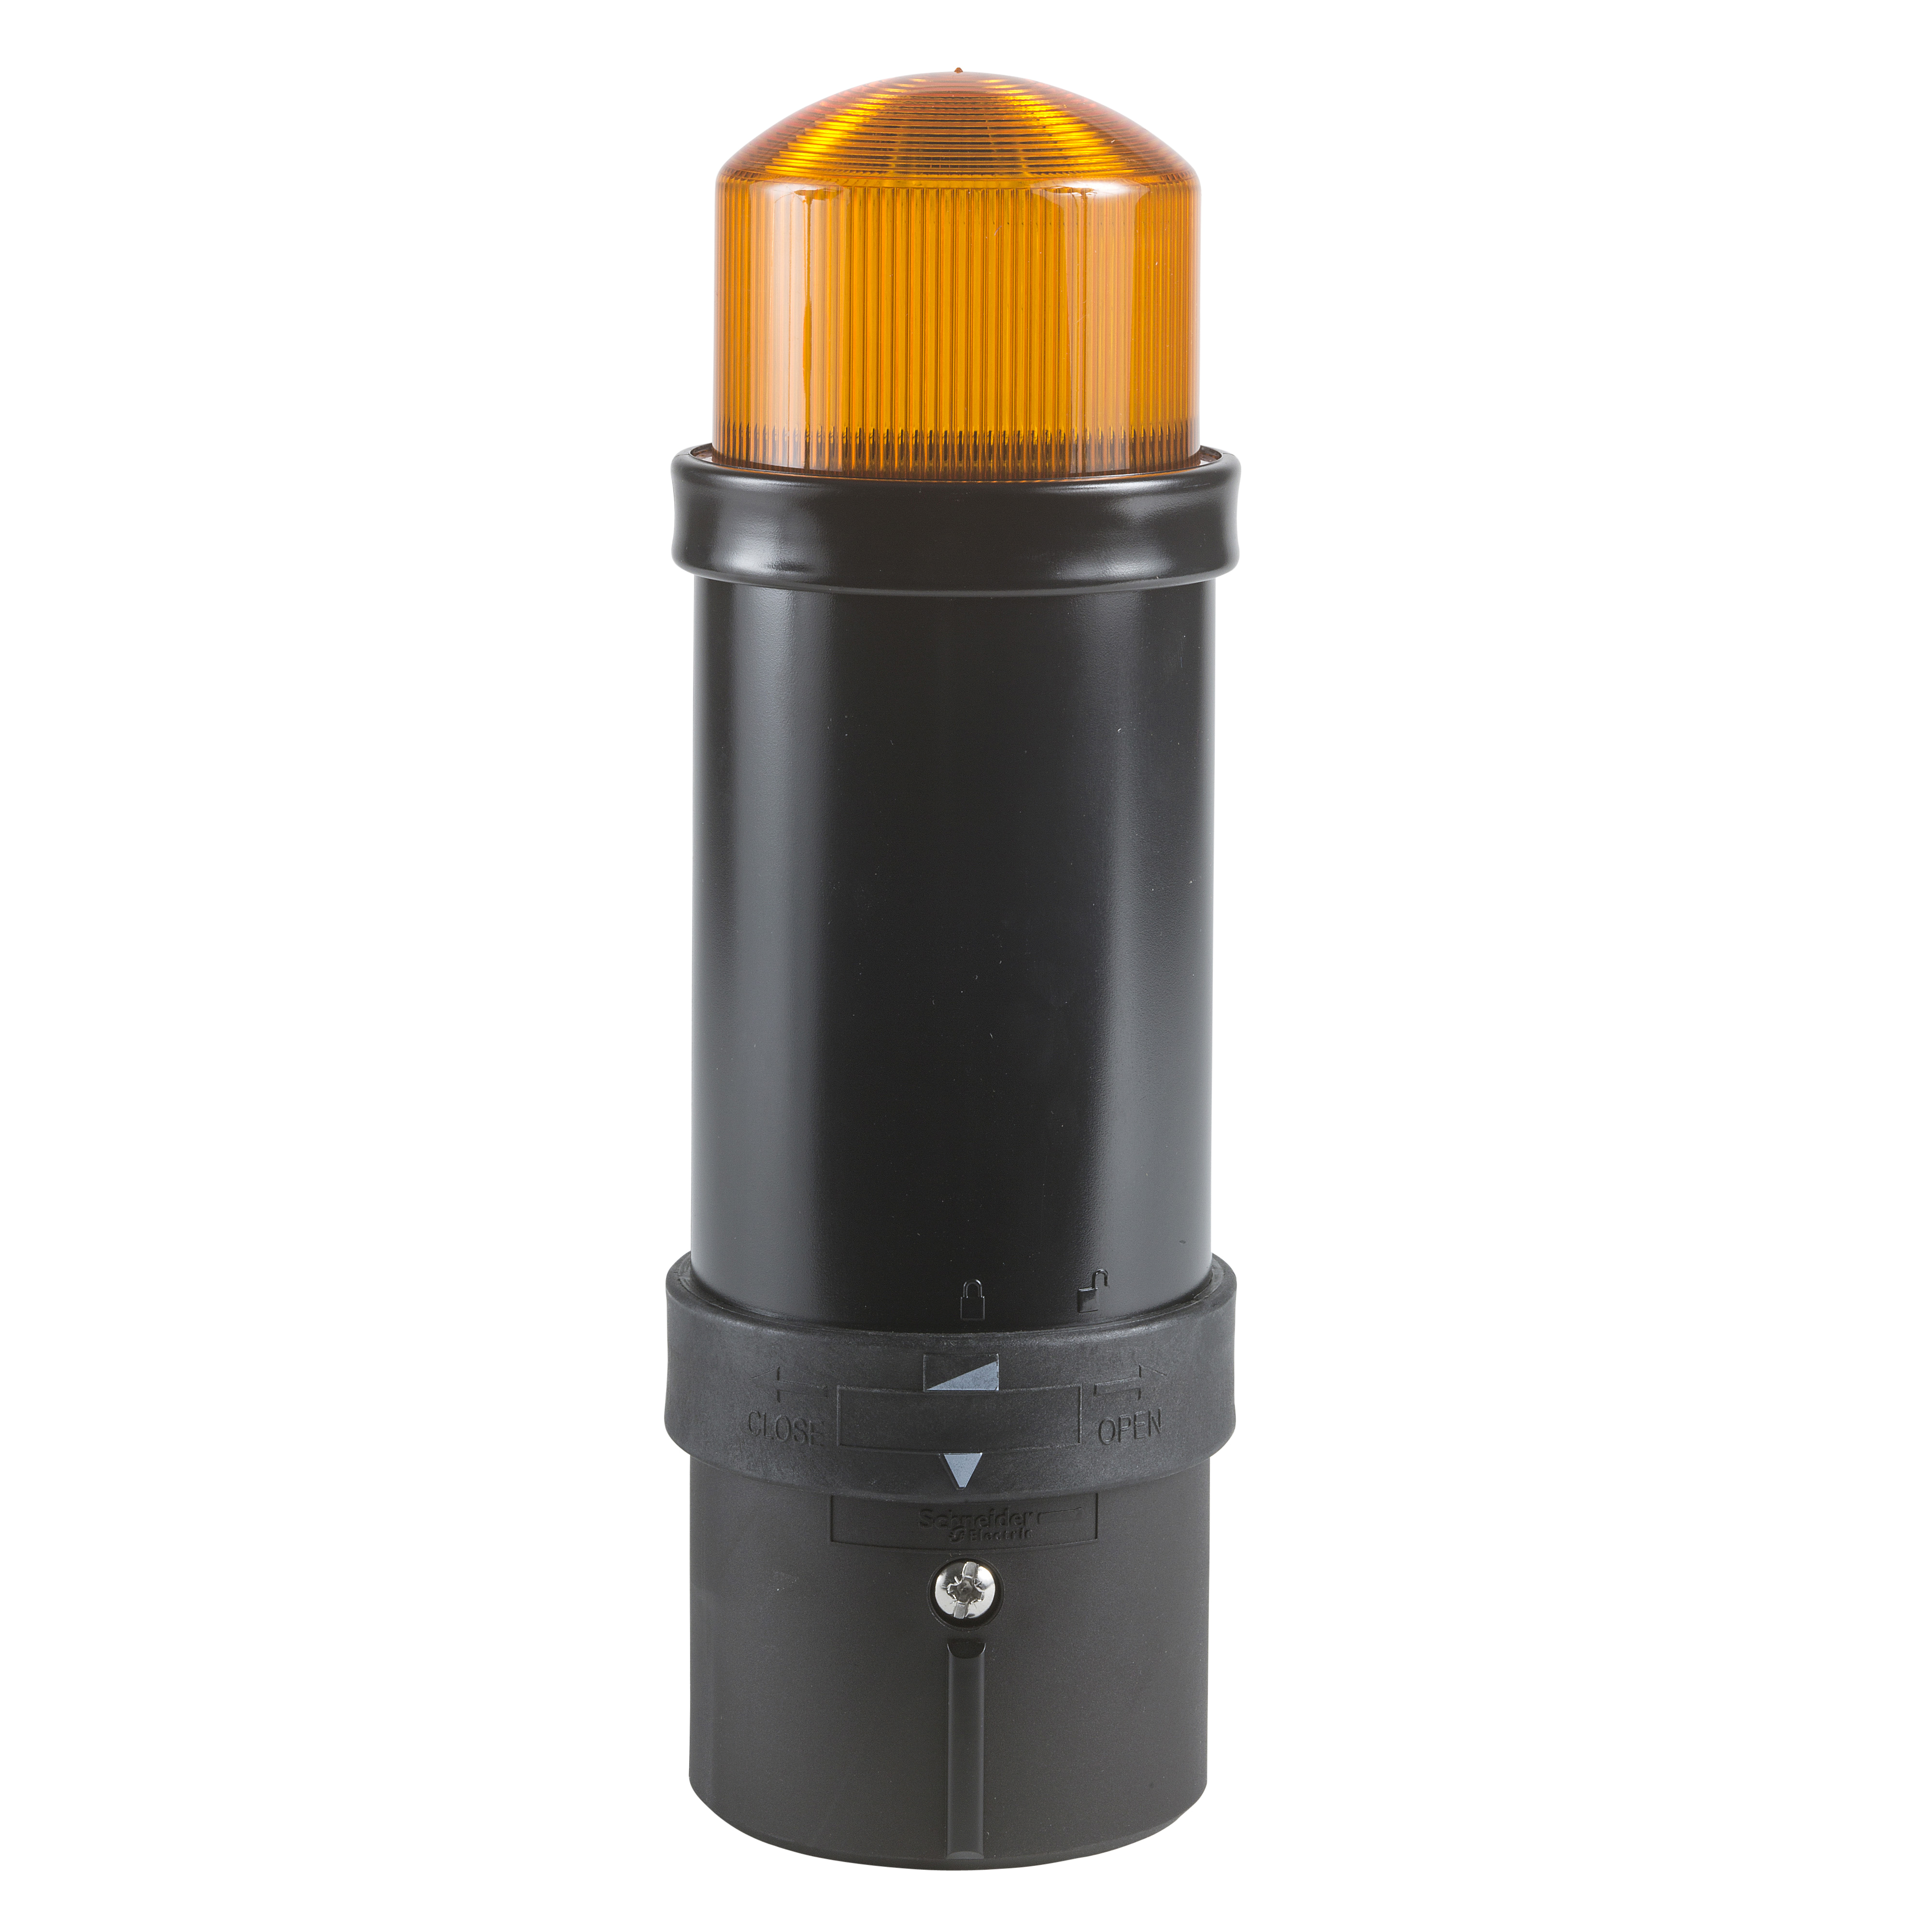 Illuminated beacon, Harmony XVB, plastic, orange, 70mm, flashing, integral flash discharge tube, 10 joule, 24V AC DC